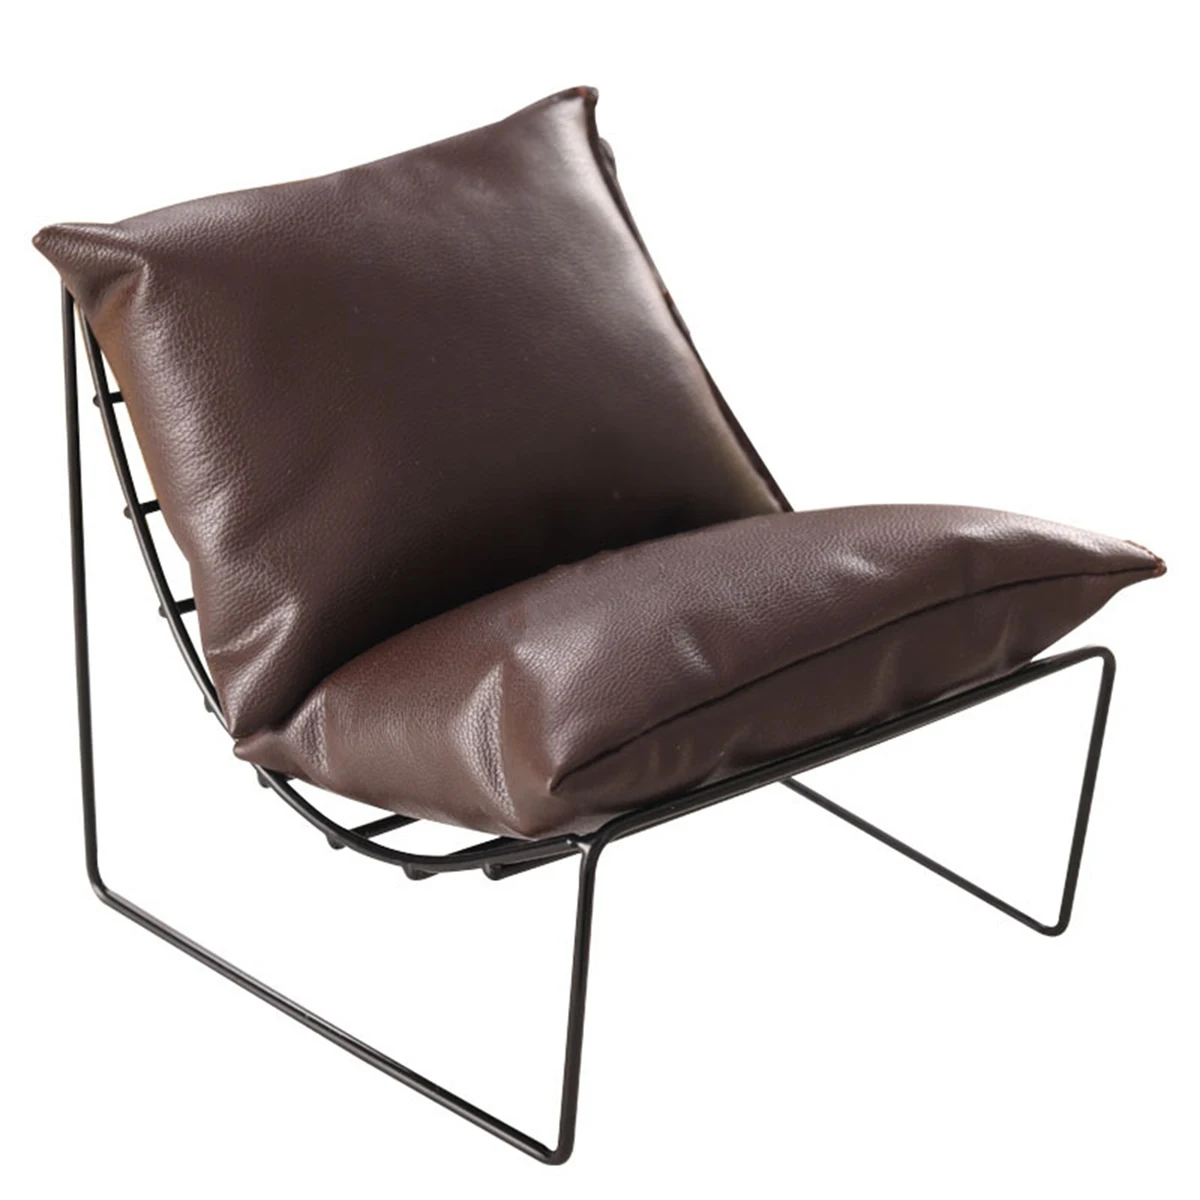 

Миниатюрное кресло Moon Chair в масштабе 1:6, кожаный мини-диван, одиночный стул для кукольного домика, аксессуары, темно-коричневый